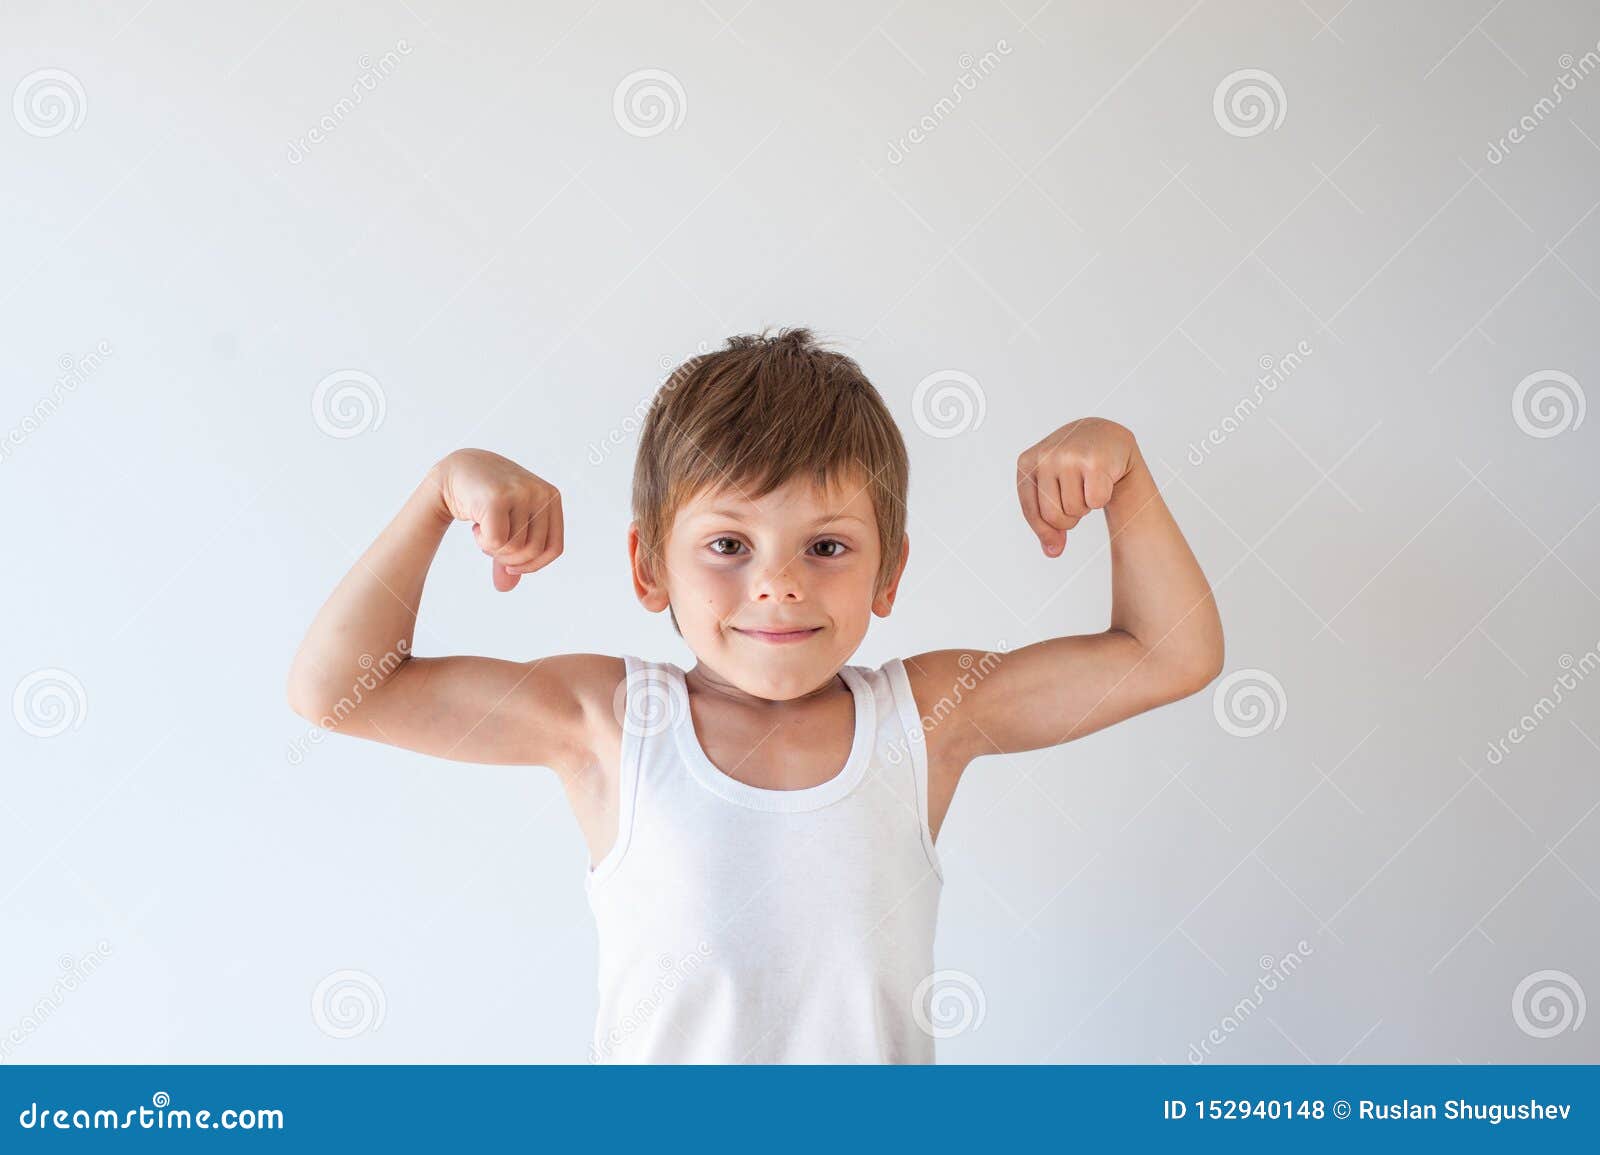 Включи сильные мальчики. Мальчик здоровый и сильный. Сильный мальчик. Сильный и здоровый ребенок. Здоровый и сильный малыш.